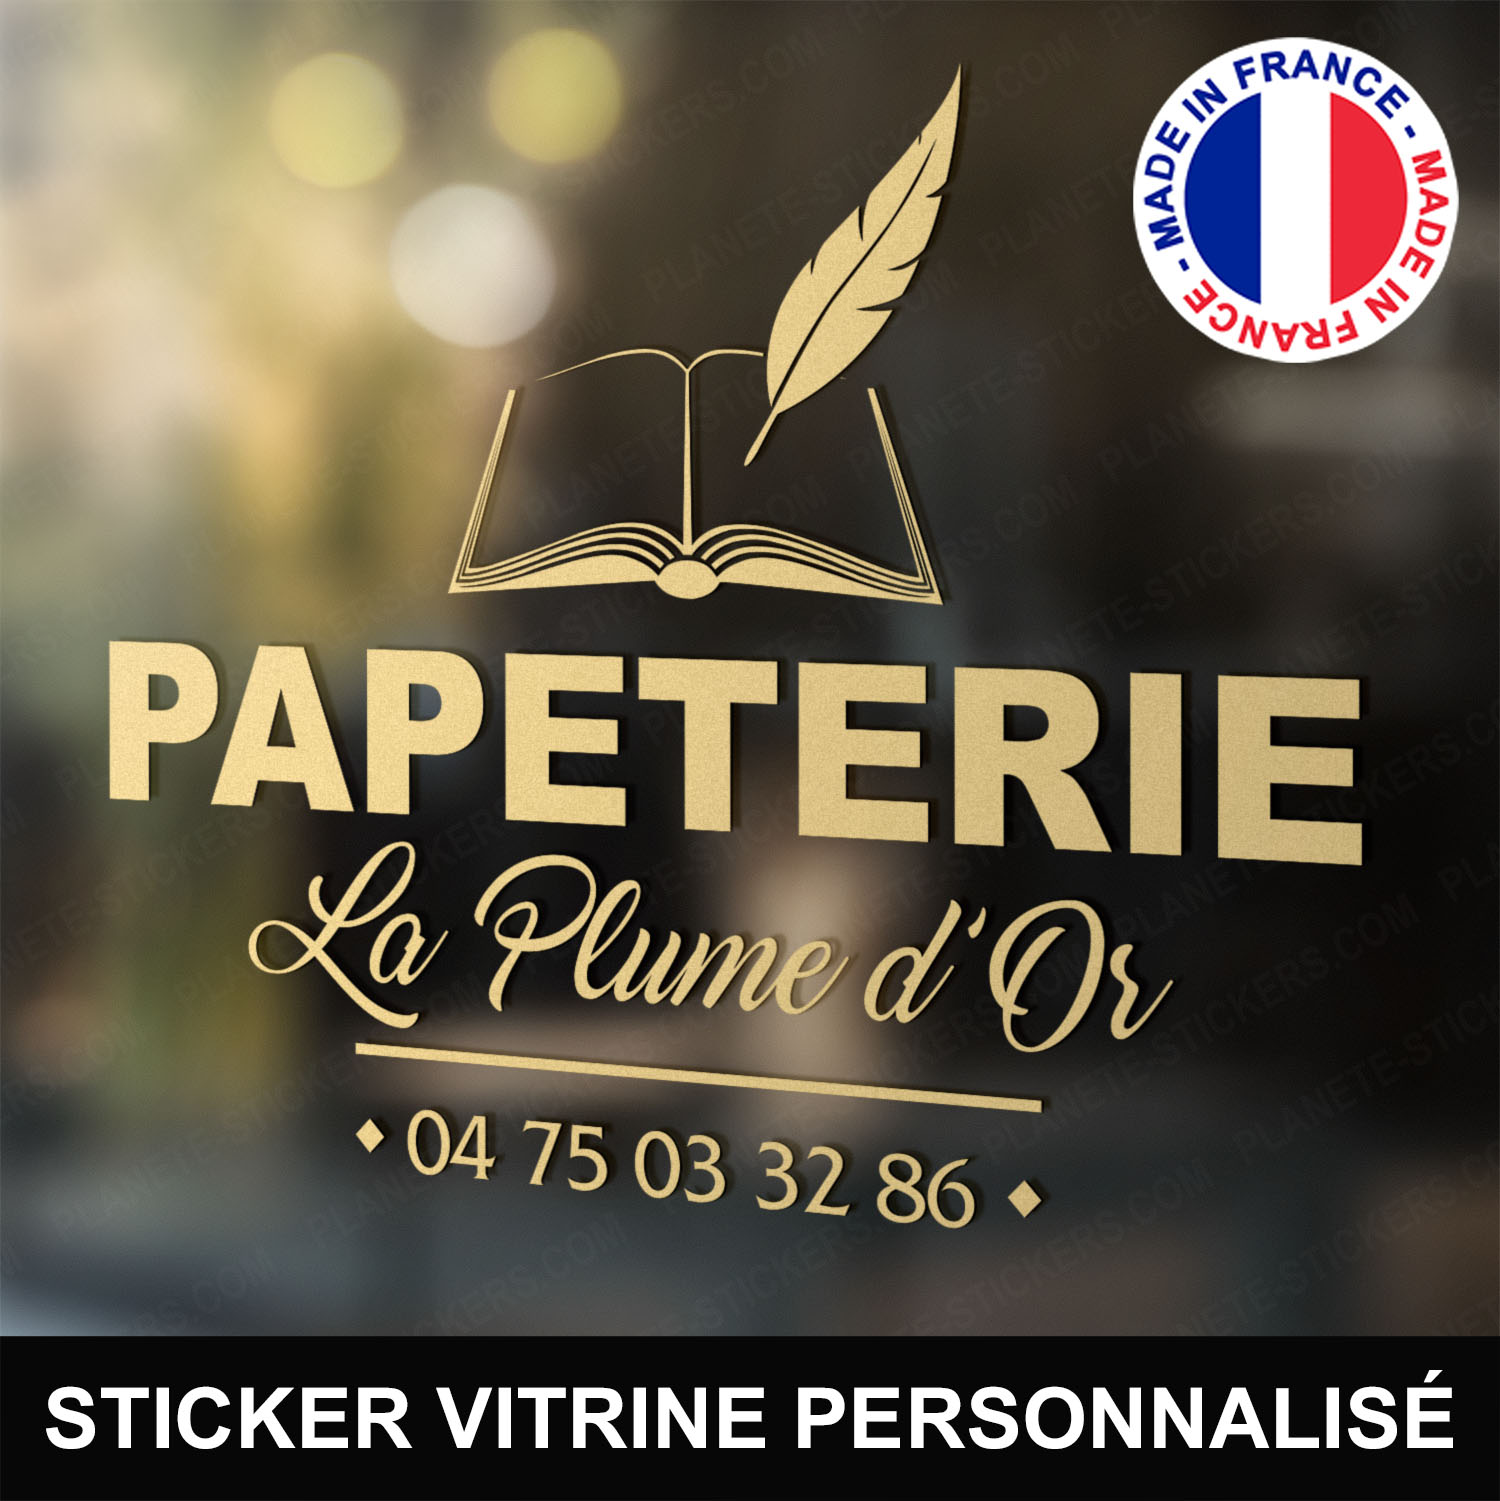 ref3papeterievitrine-stickers-papeterie-vitrine-sticker-personnalisé-autocollant-pro-papetier-vitre-professionnel-logo-plume-livre